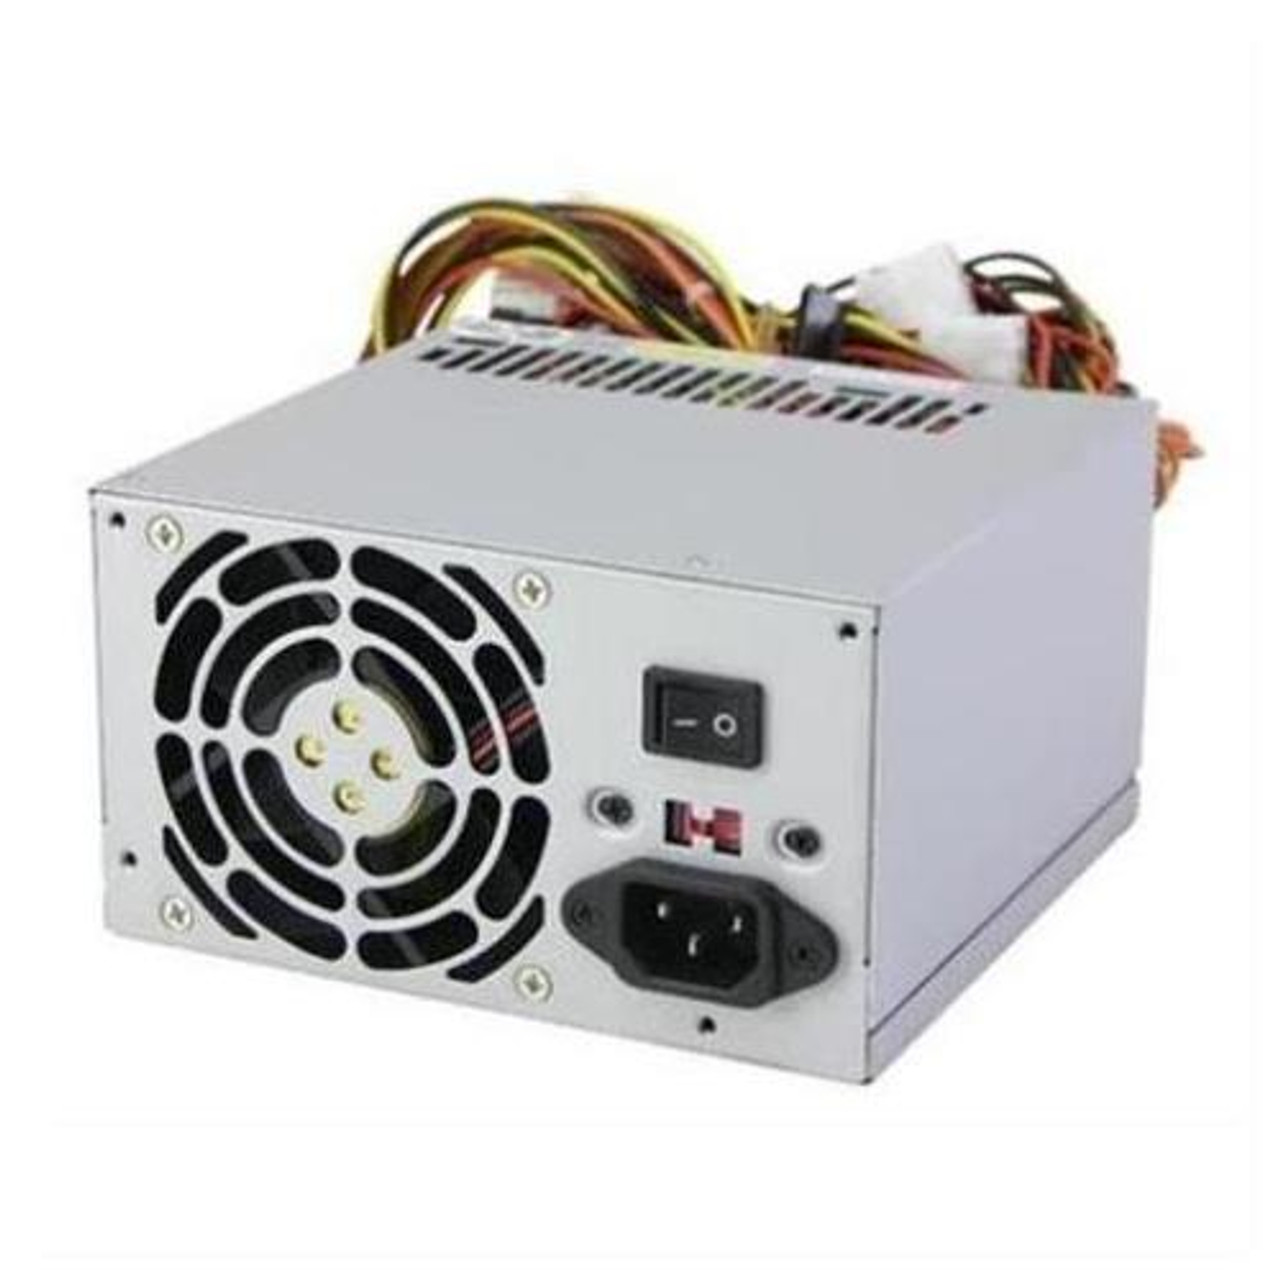 071-000-454 EMC 400-Watts Hot Swap Power Supply for DAE2P